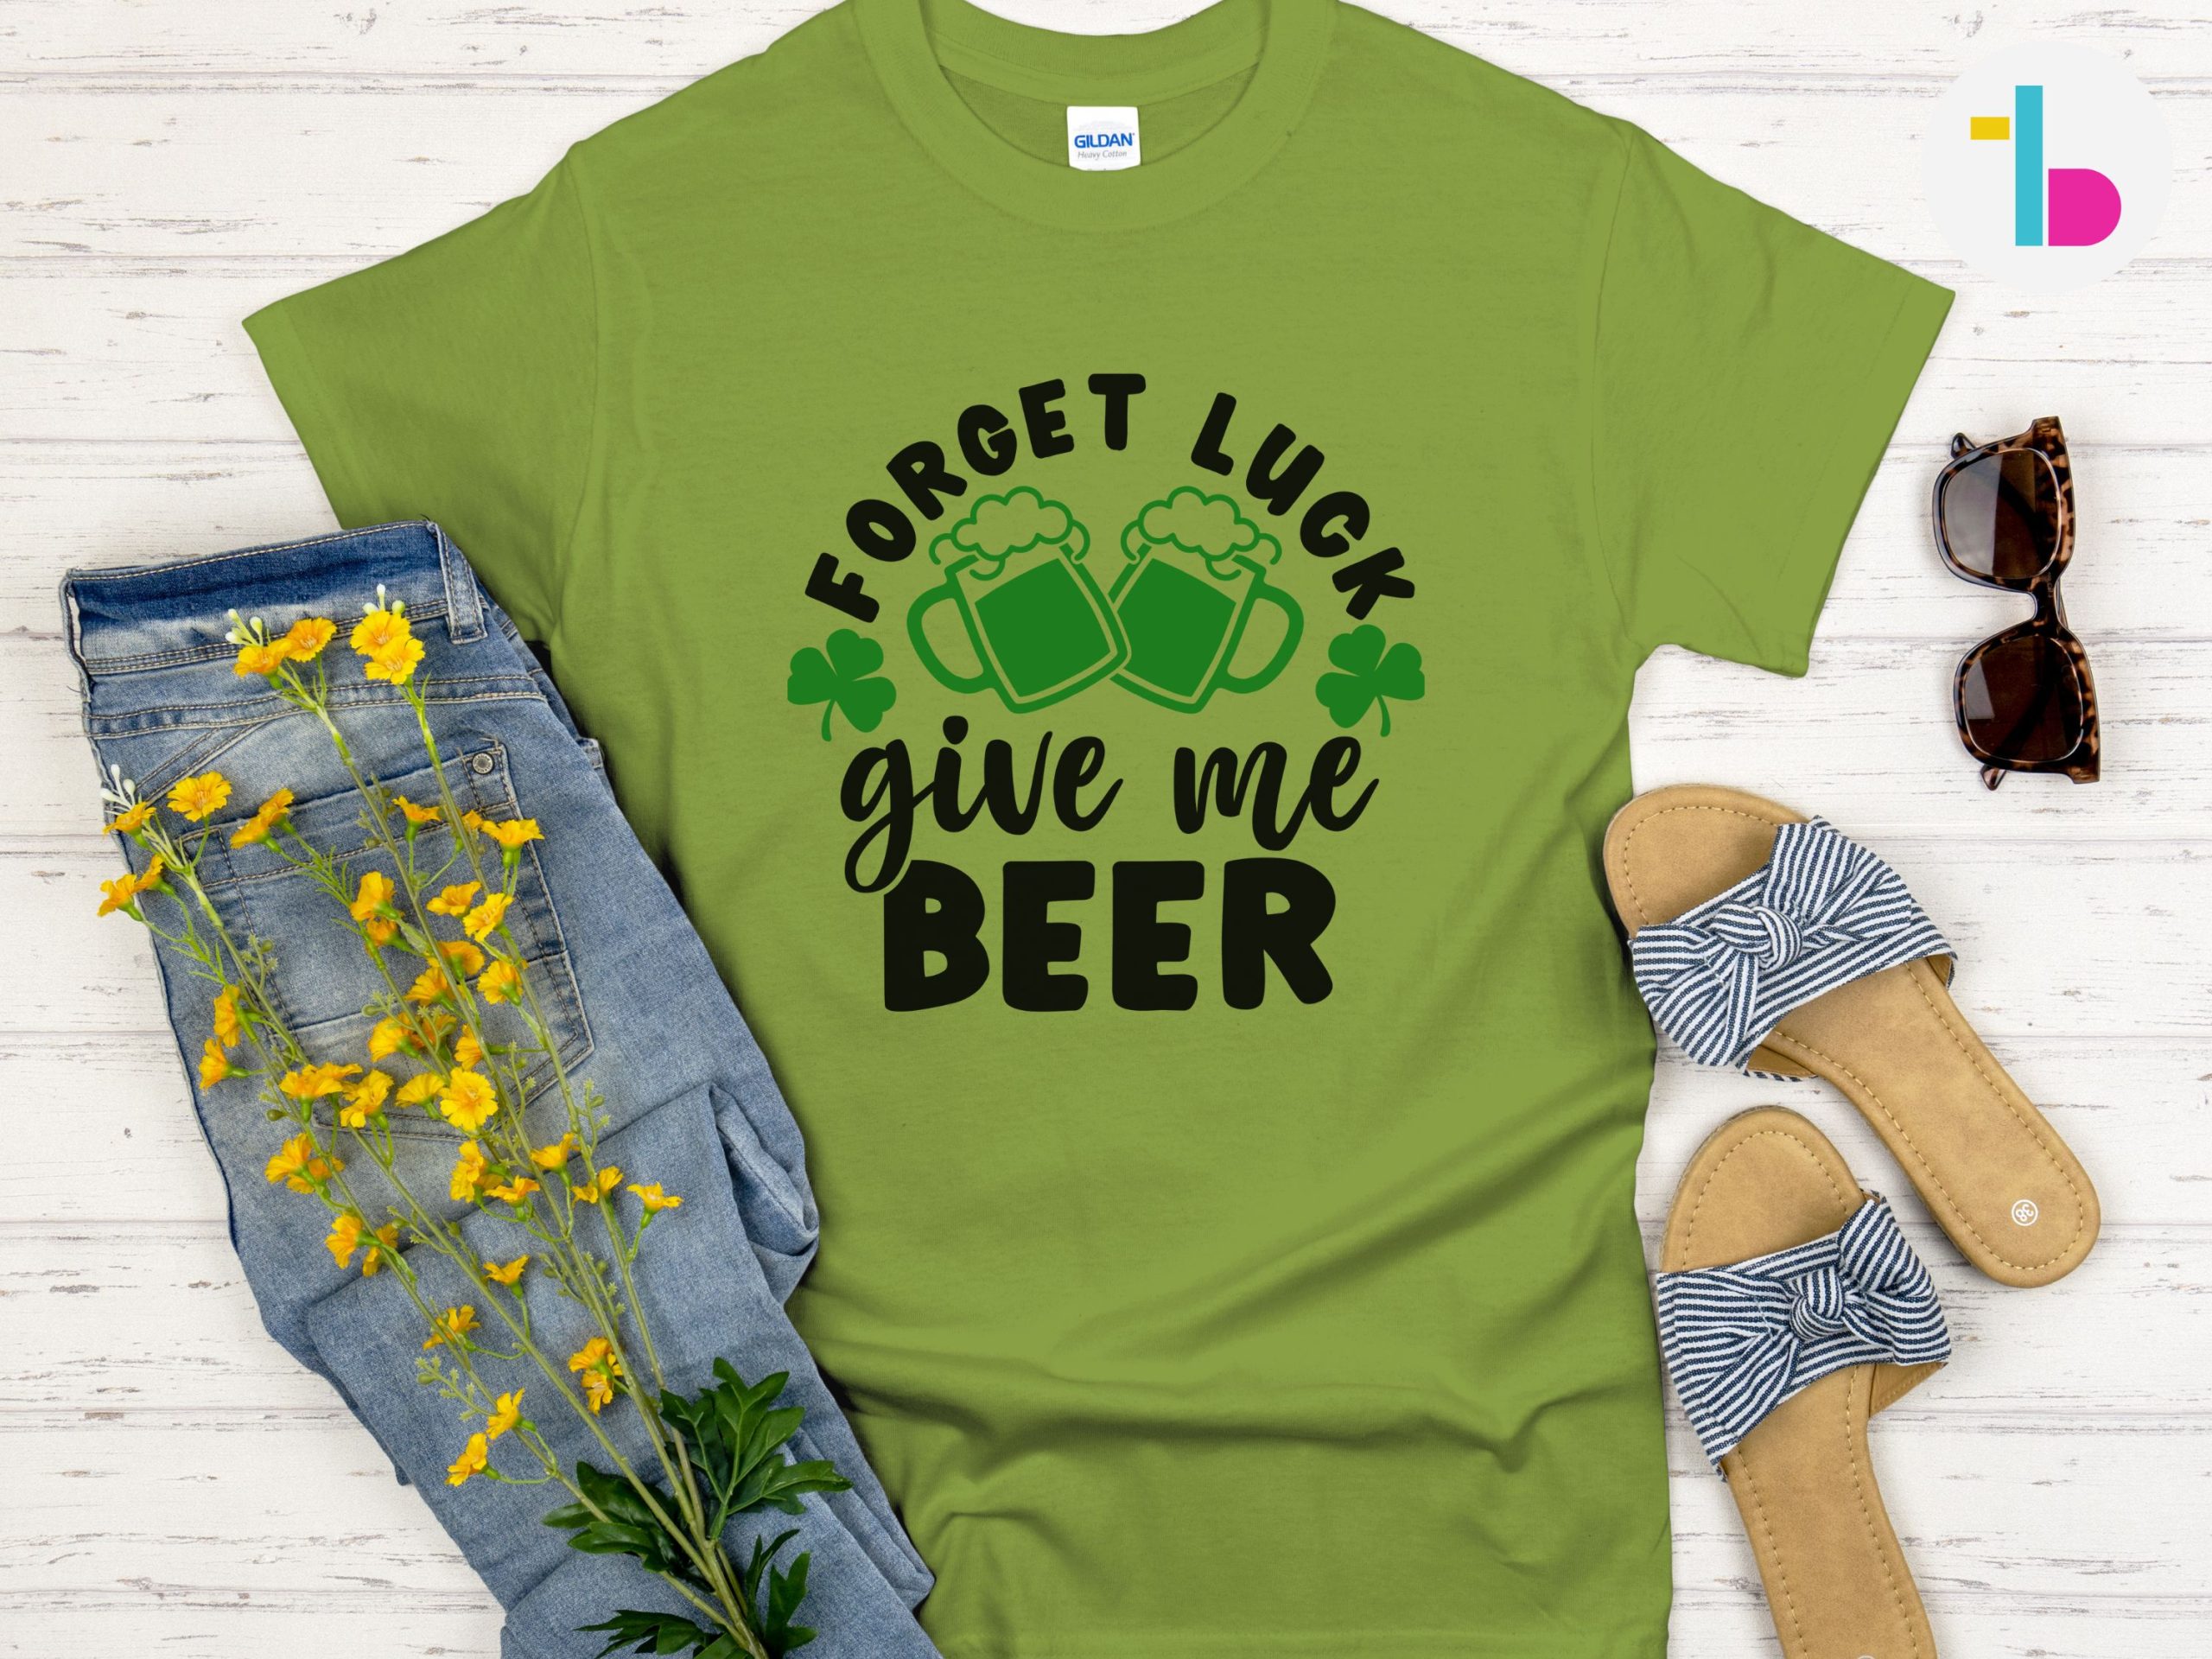 Beer lover shirt, Irish shirt, St Pattys Day shirt, Irish gifts